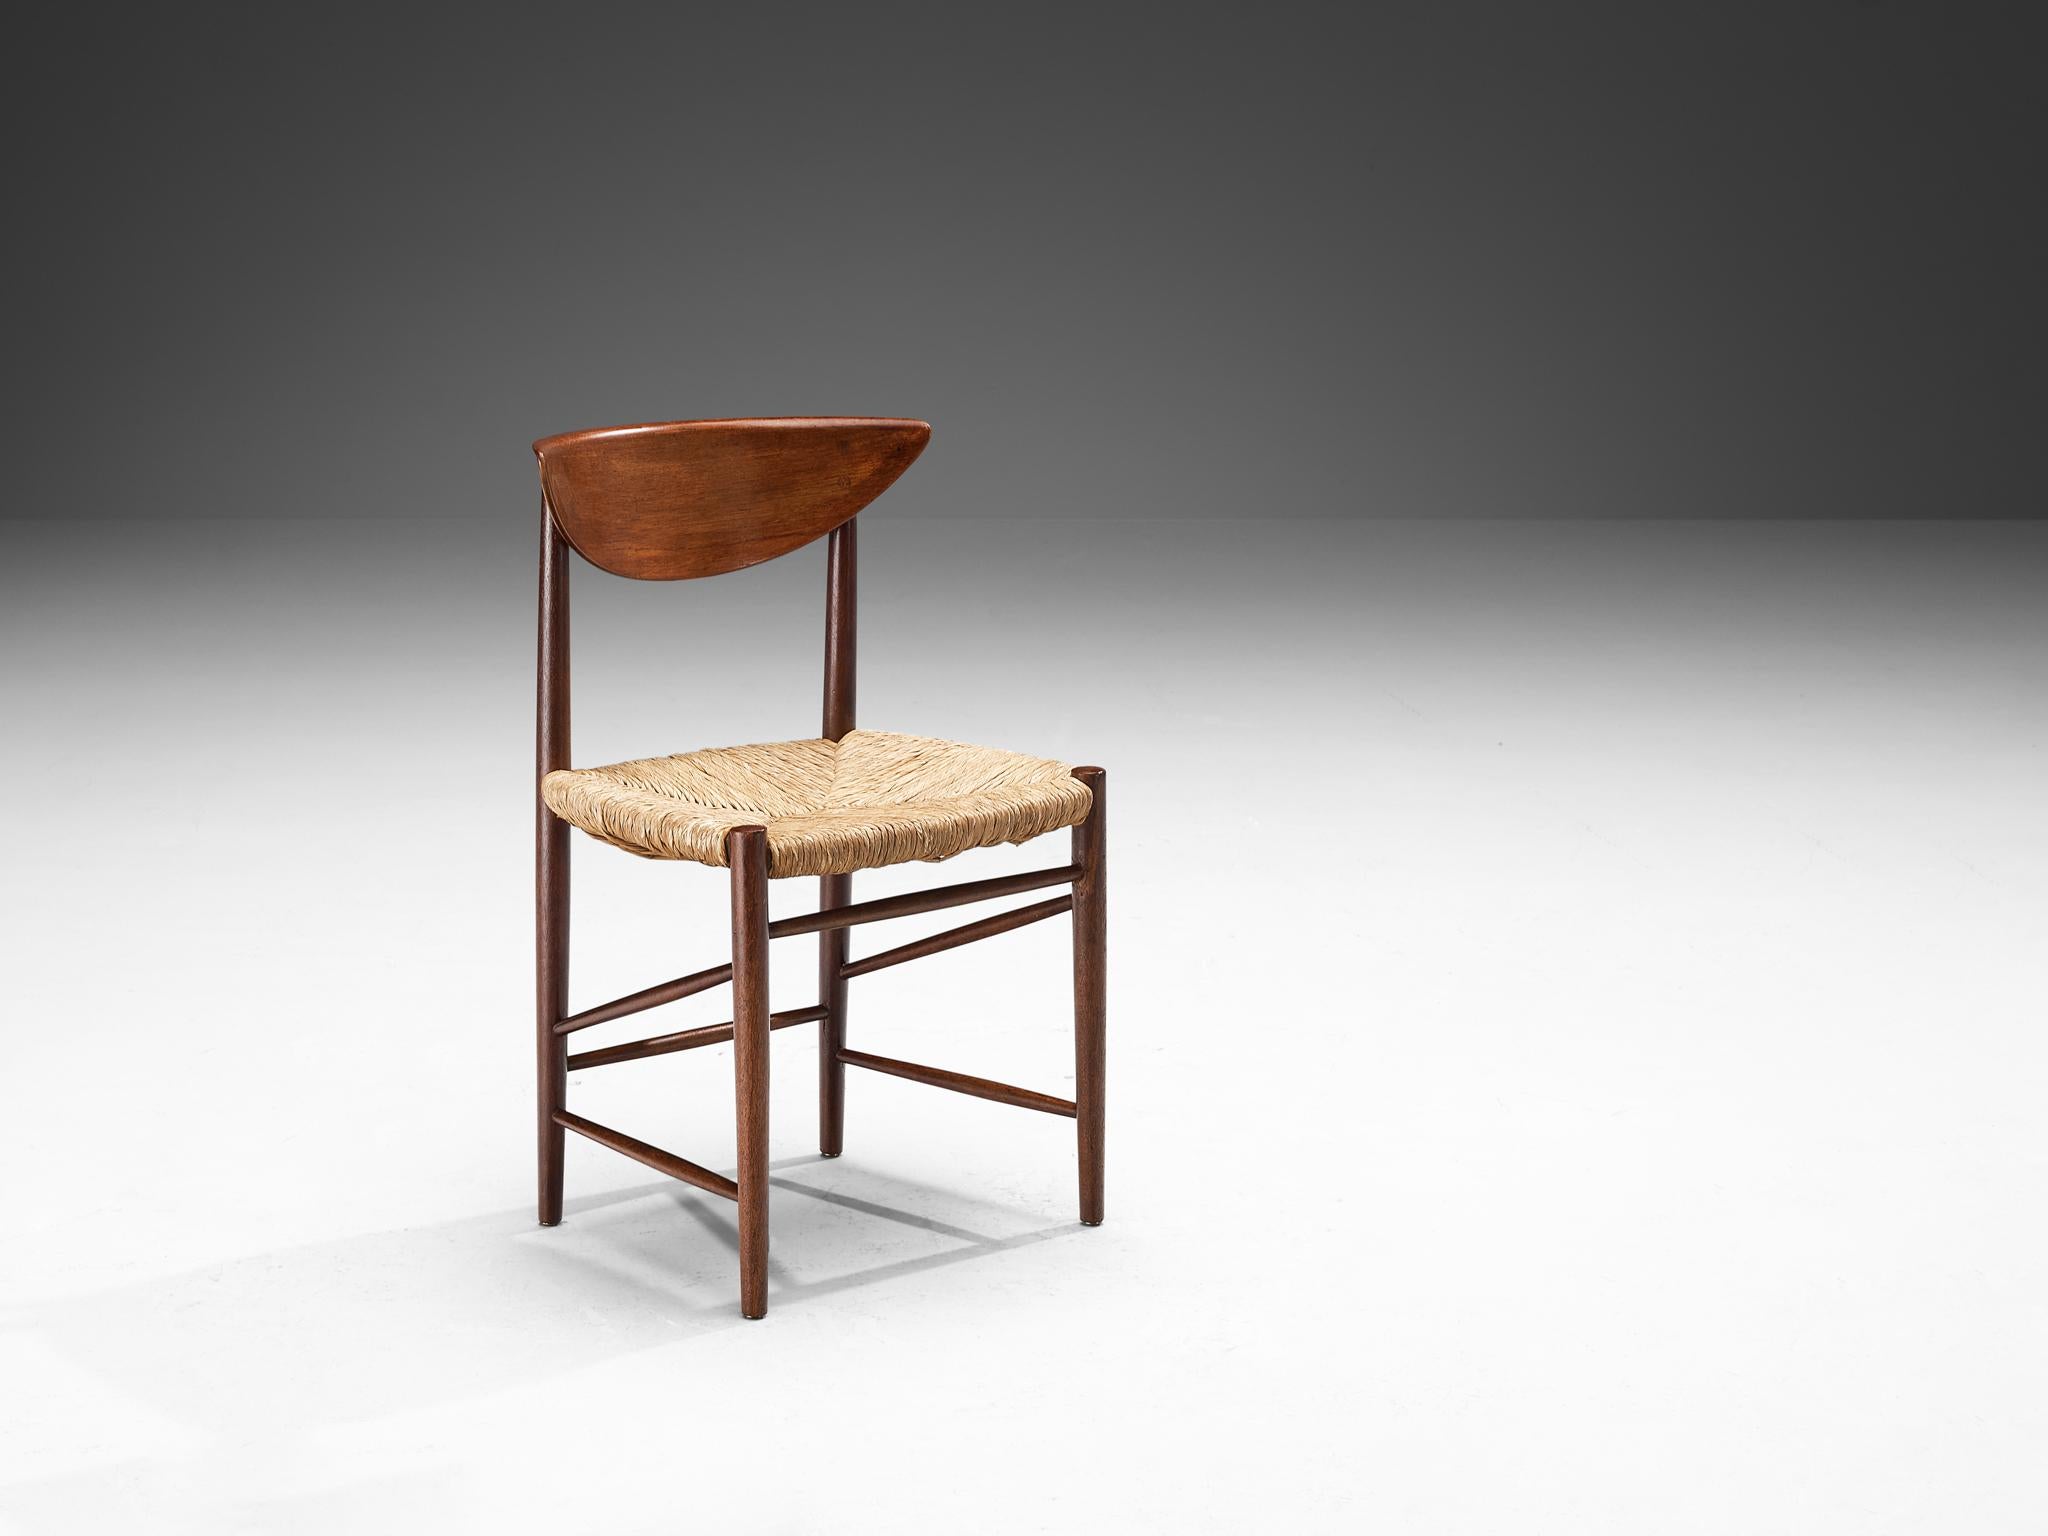 Peter Hvidt & Orla Mølgaard-Nielsen für Søborg Møbelfabrik, Esszimmerstuhl, Modell '316', Teak, Papierkordel, Dänemark, 1950er Jahre.

Dieser organisch anmutende Stuhl ist mit viel Liebe zum Detail gefertigt, was sich in der schönen, geschwungenen